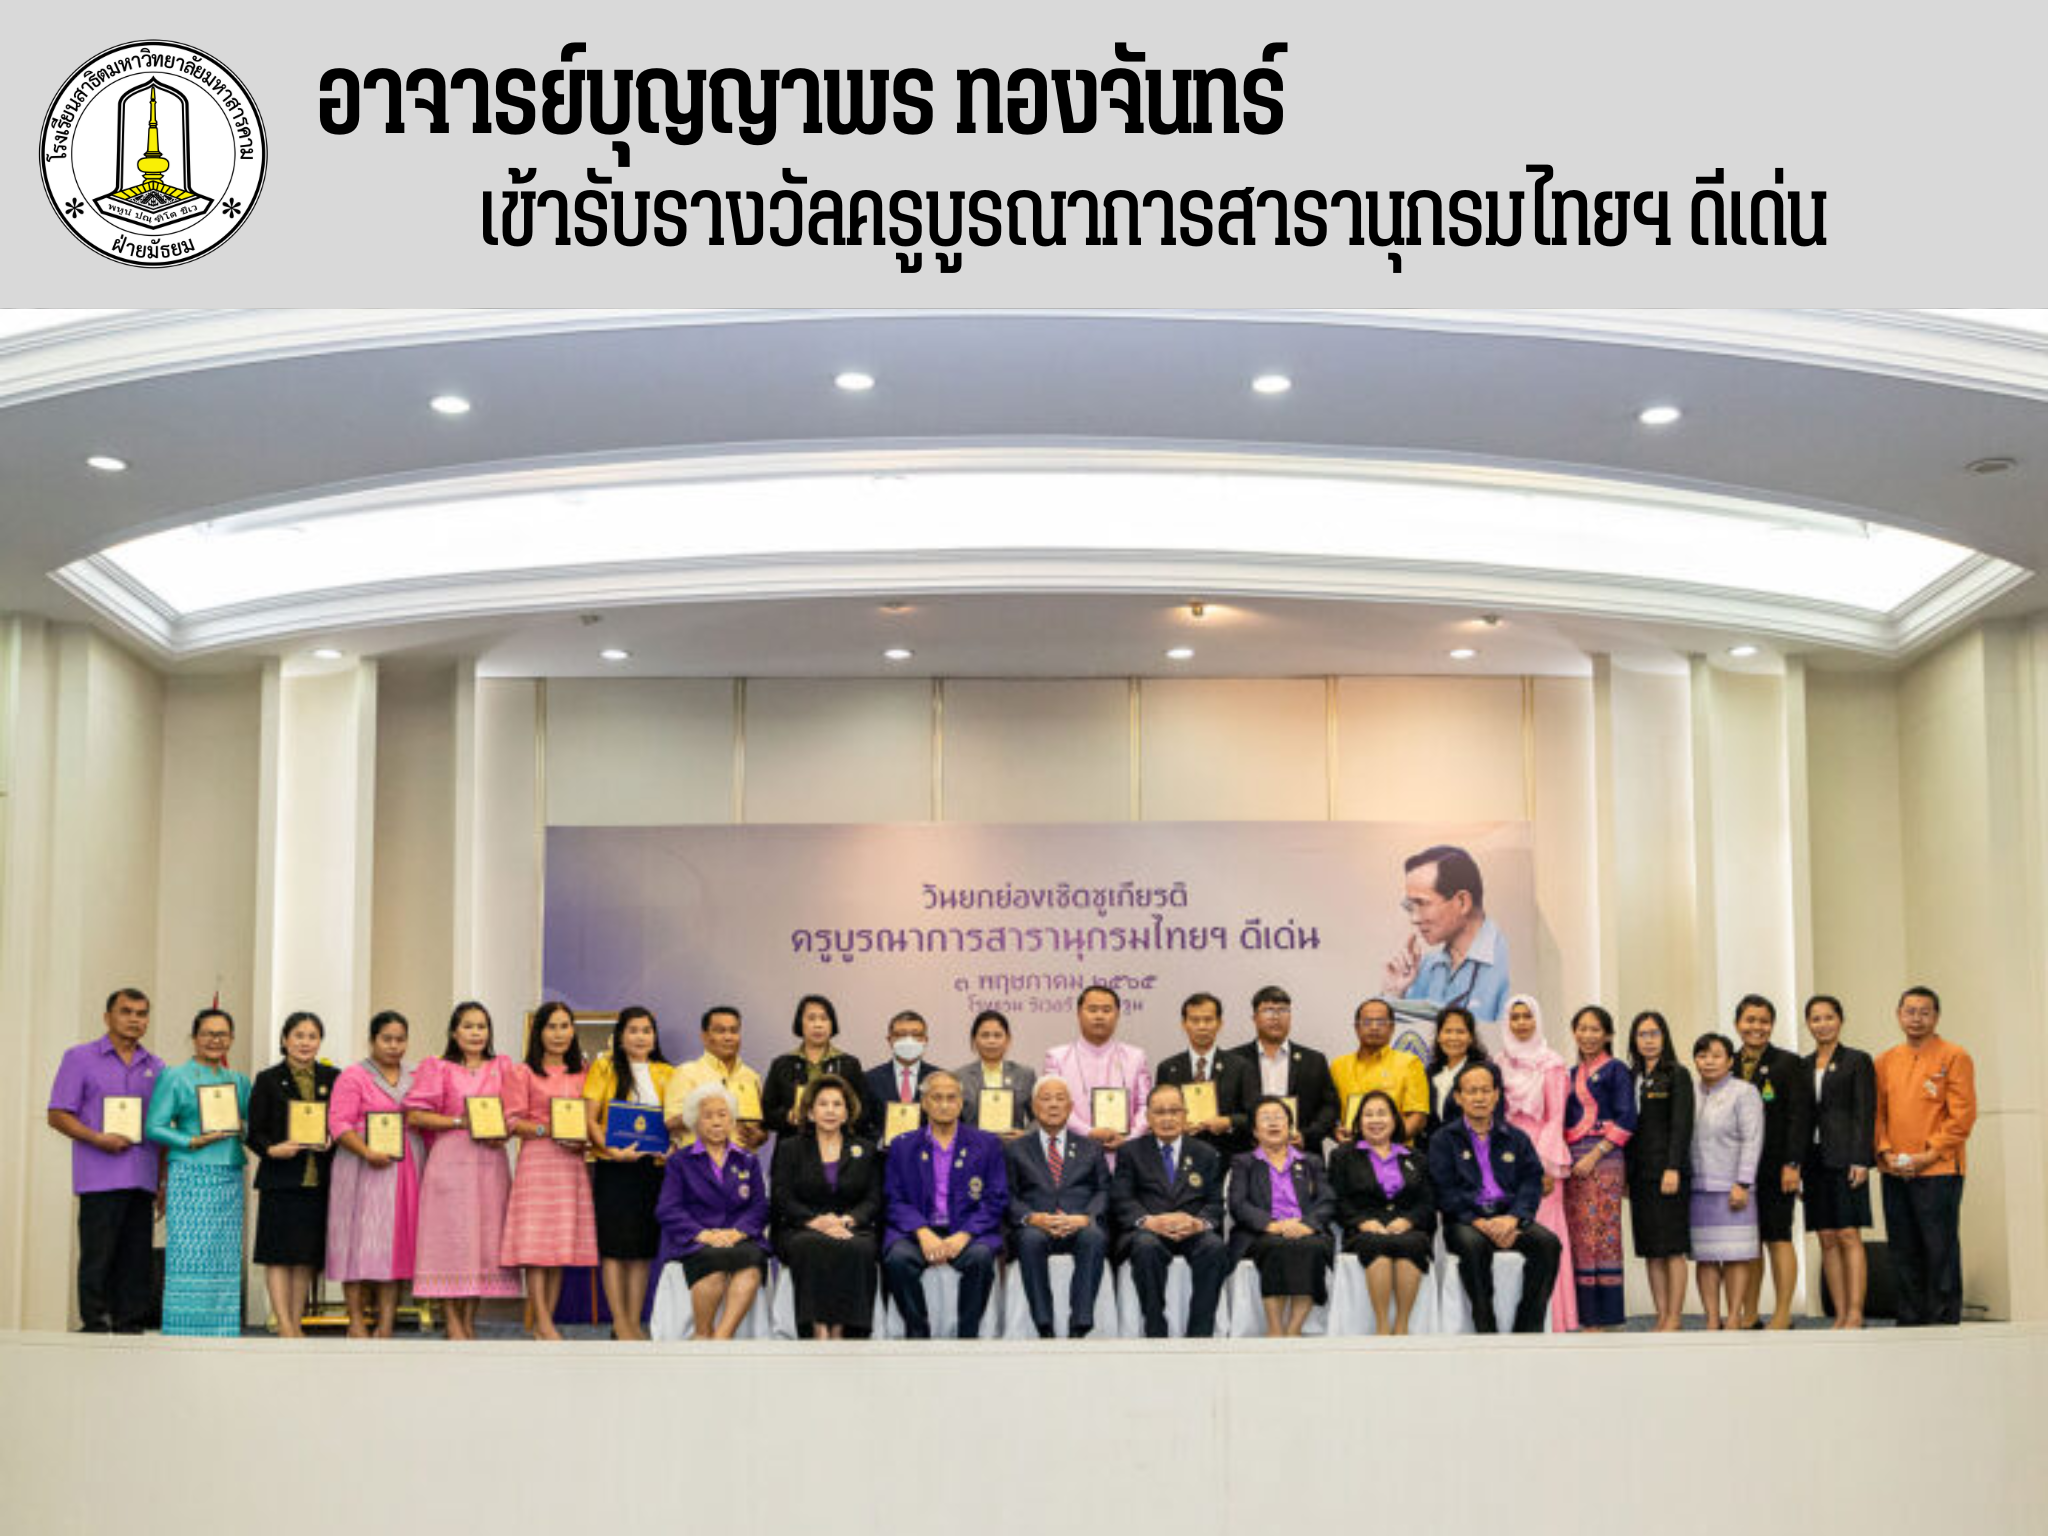 นางสาวบุญญาพร ทองจันทร์ หัวหน้ากลุ่มสาระการเรียนรู้ภาษาไทย ได้เข้าร่วมงานวันยกย่องเชิดชูเกียรติ ครูบูรณาการสารานุกรมไทยสำหรับเยาวชนฯ ดีเด่น 